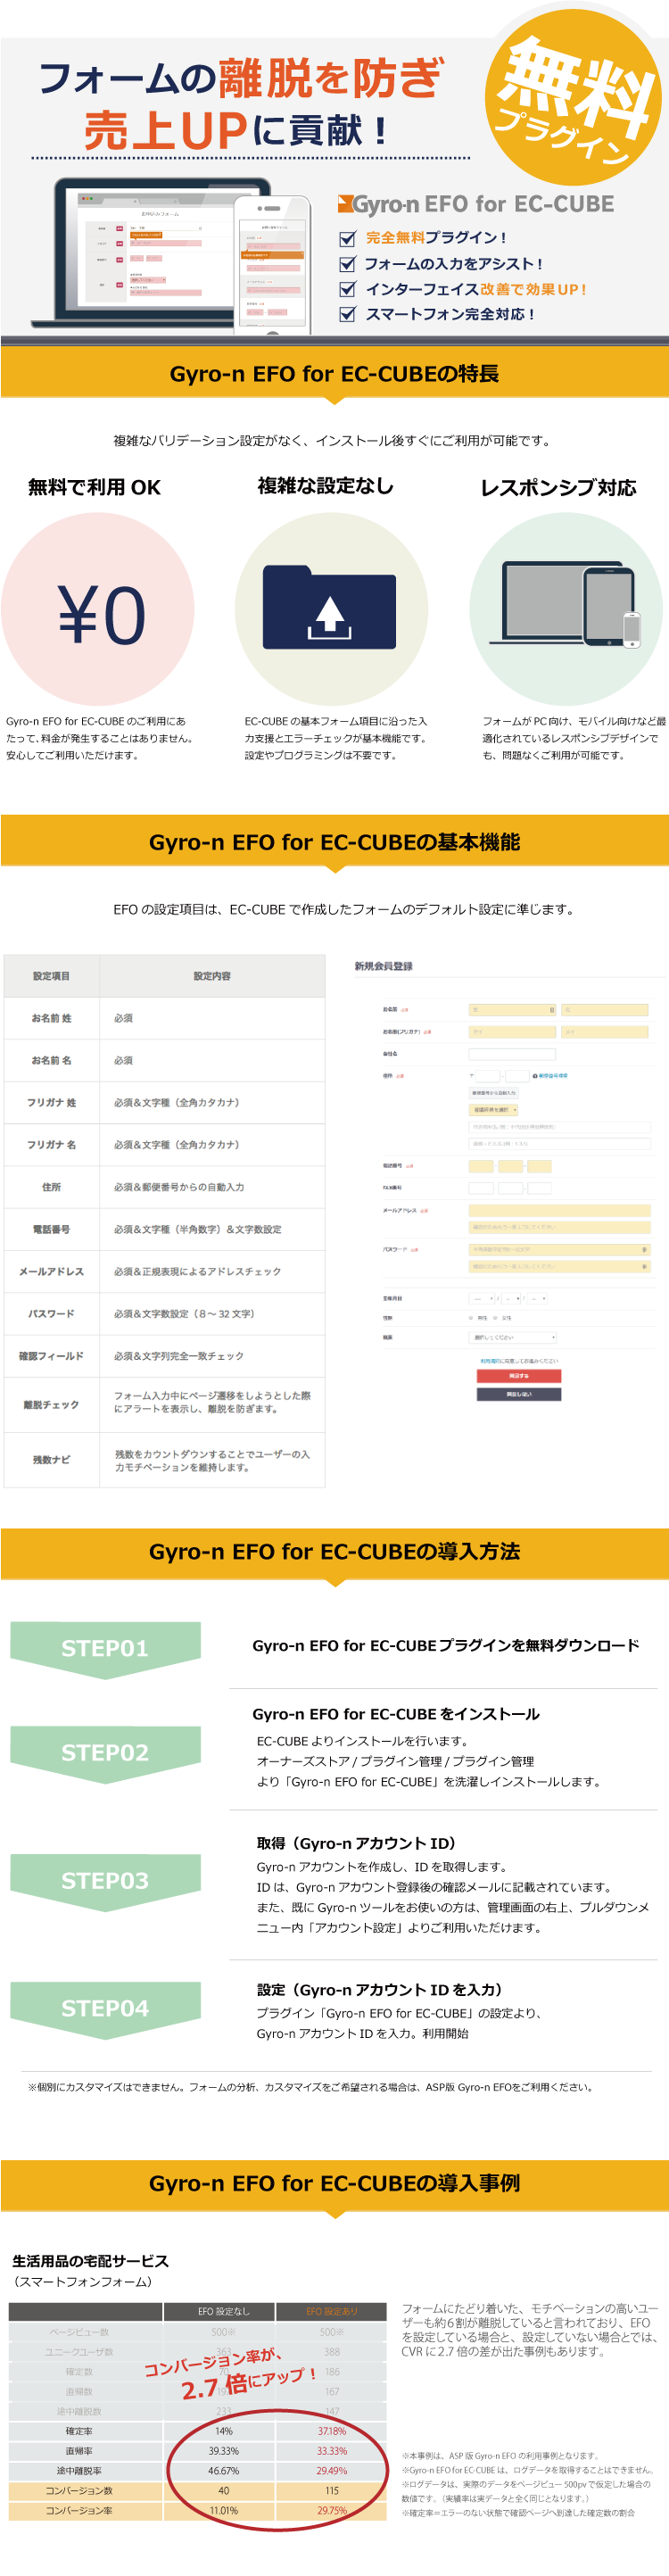 Gyro-n EFO for EC-CUBE2